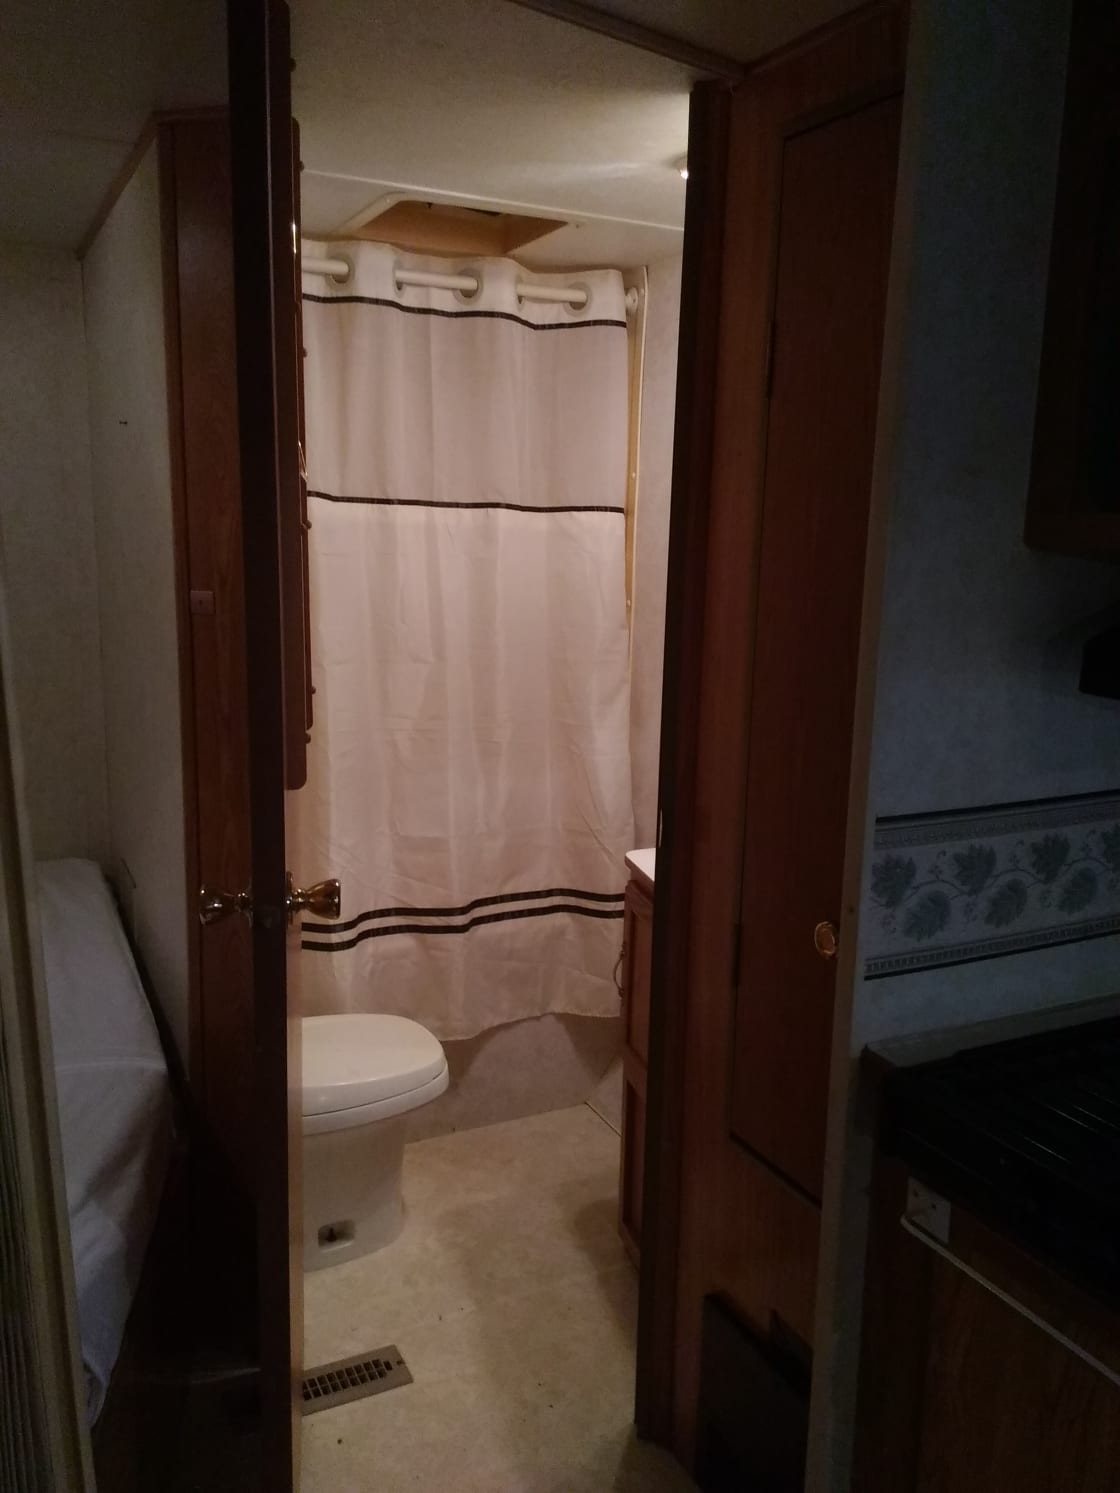 bathroom (storage) inside camper